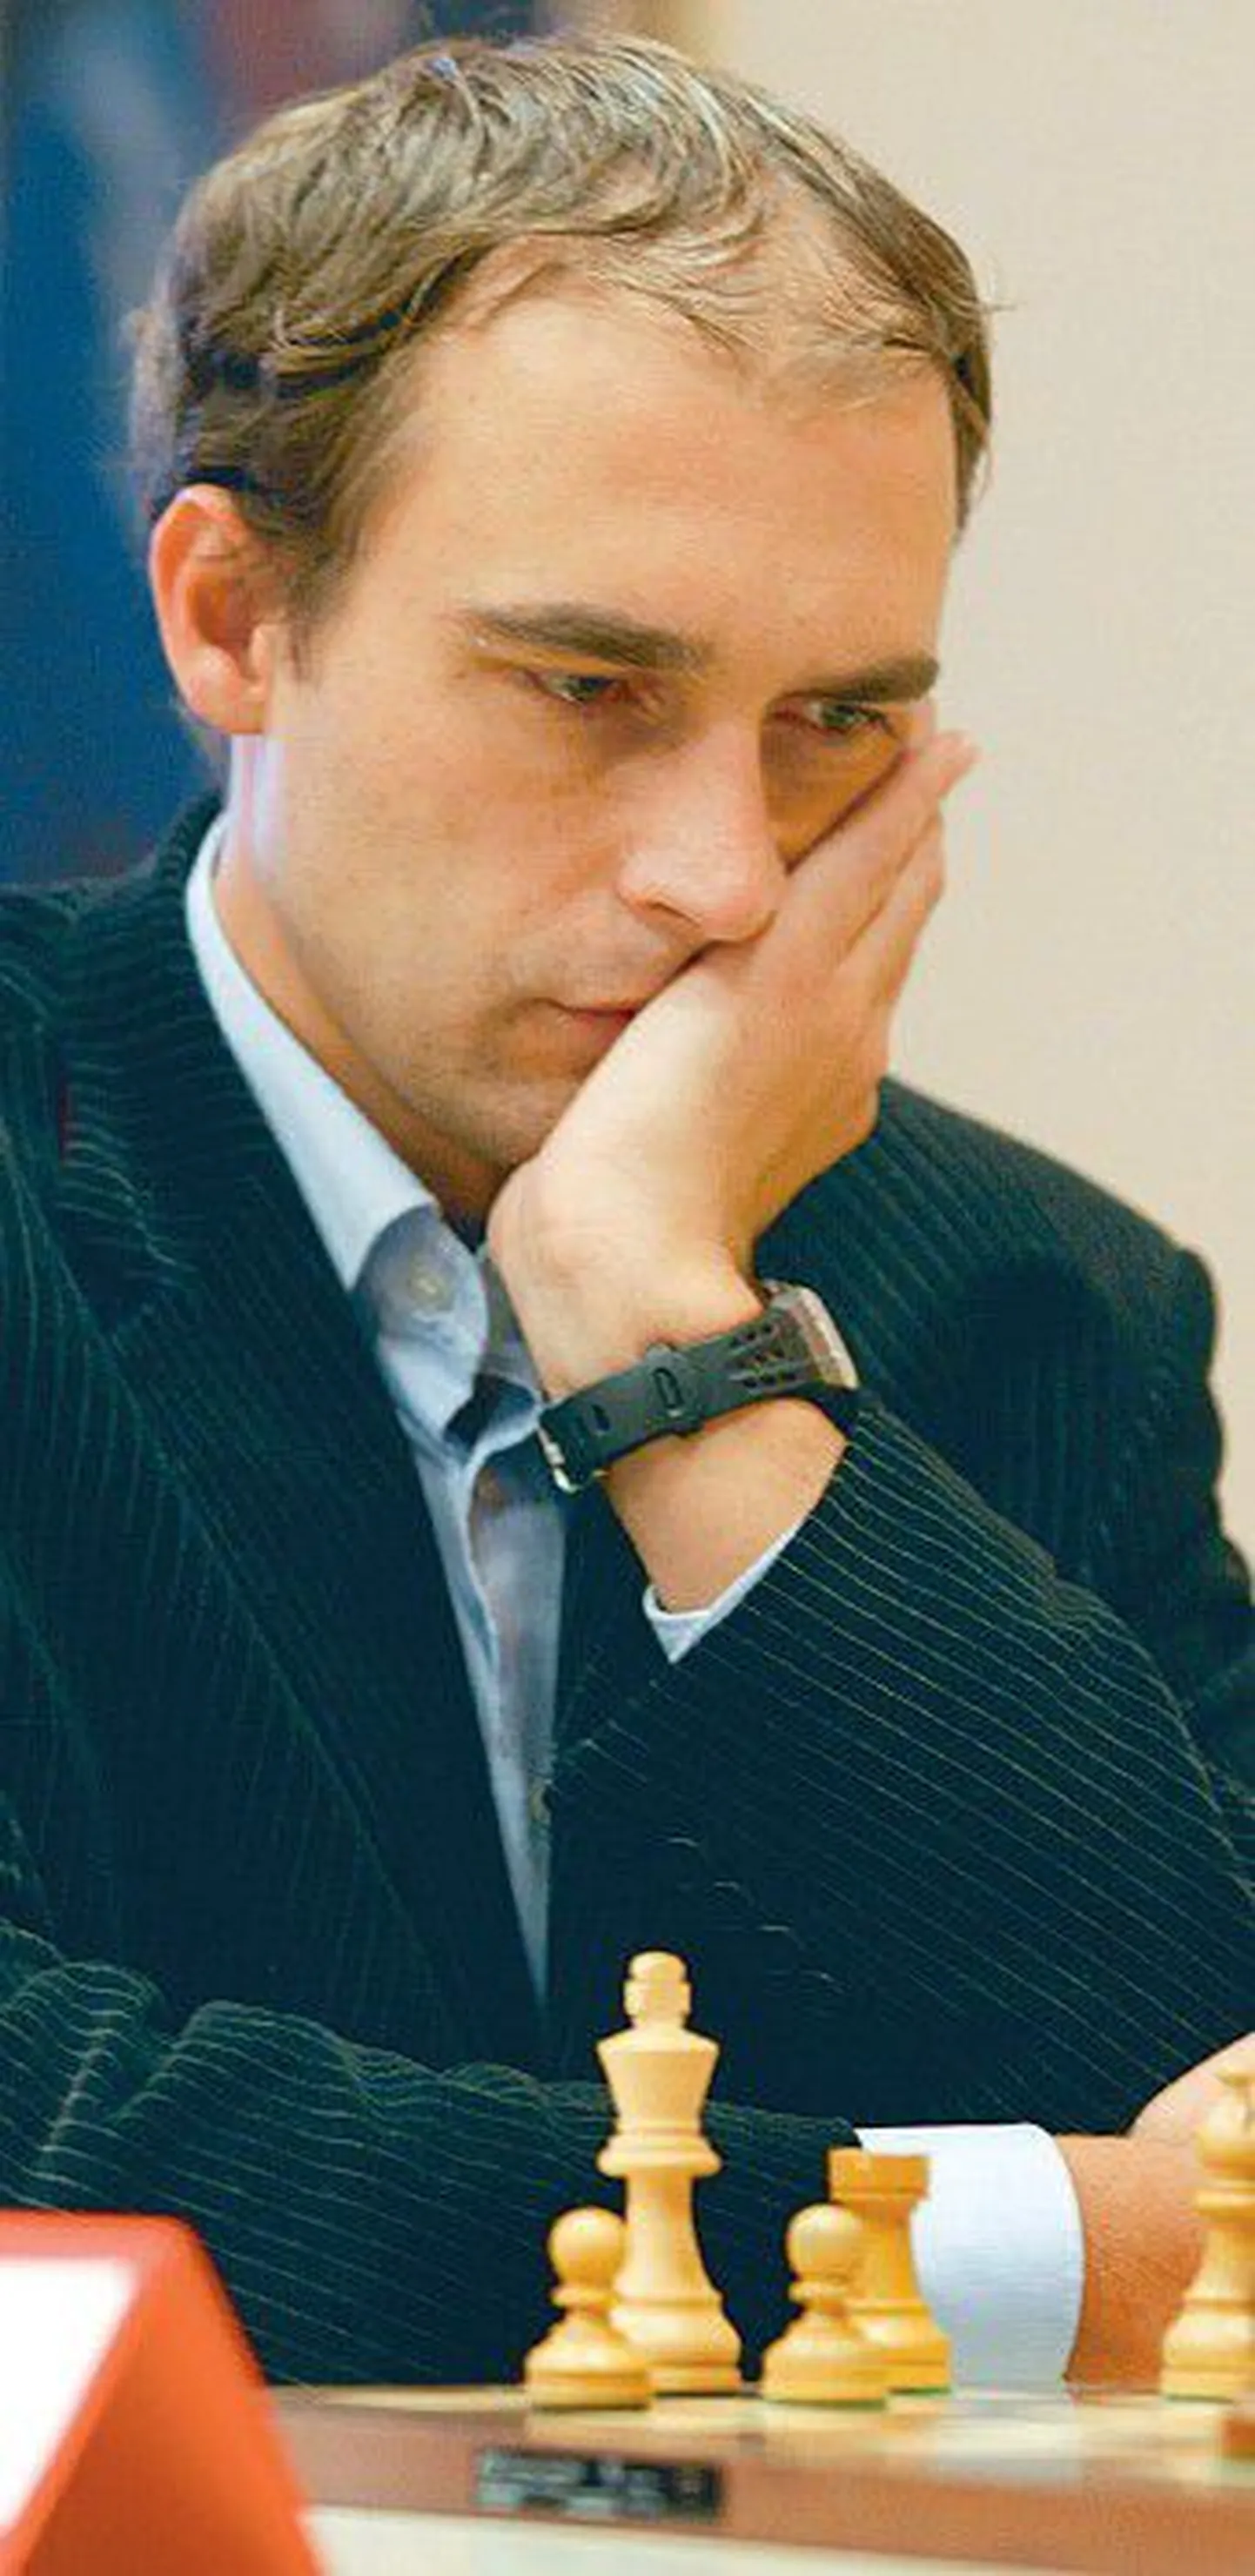 Эстонский шахматист Кайдо Кюлаотс отметил прекрасную организацию соревнований в России.